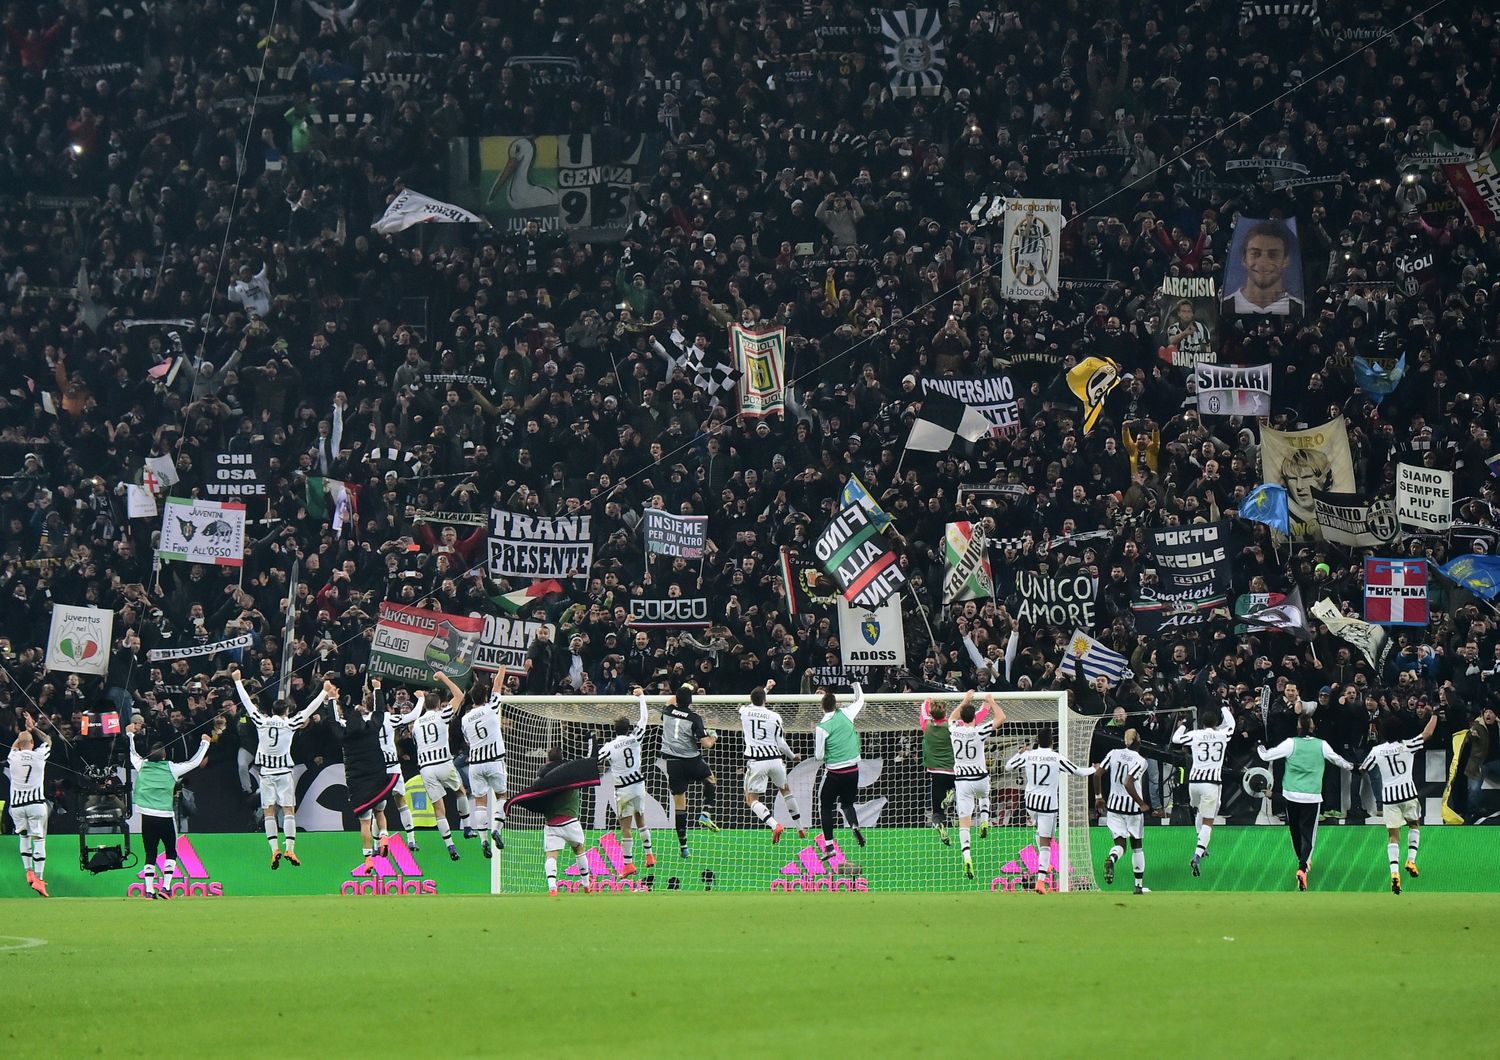 L'esultazione dei giocatori della Juventus con i tifosi dopo la vittoria con il Napoli, 13 febbraio 2016